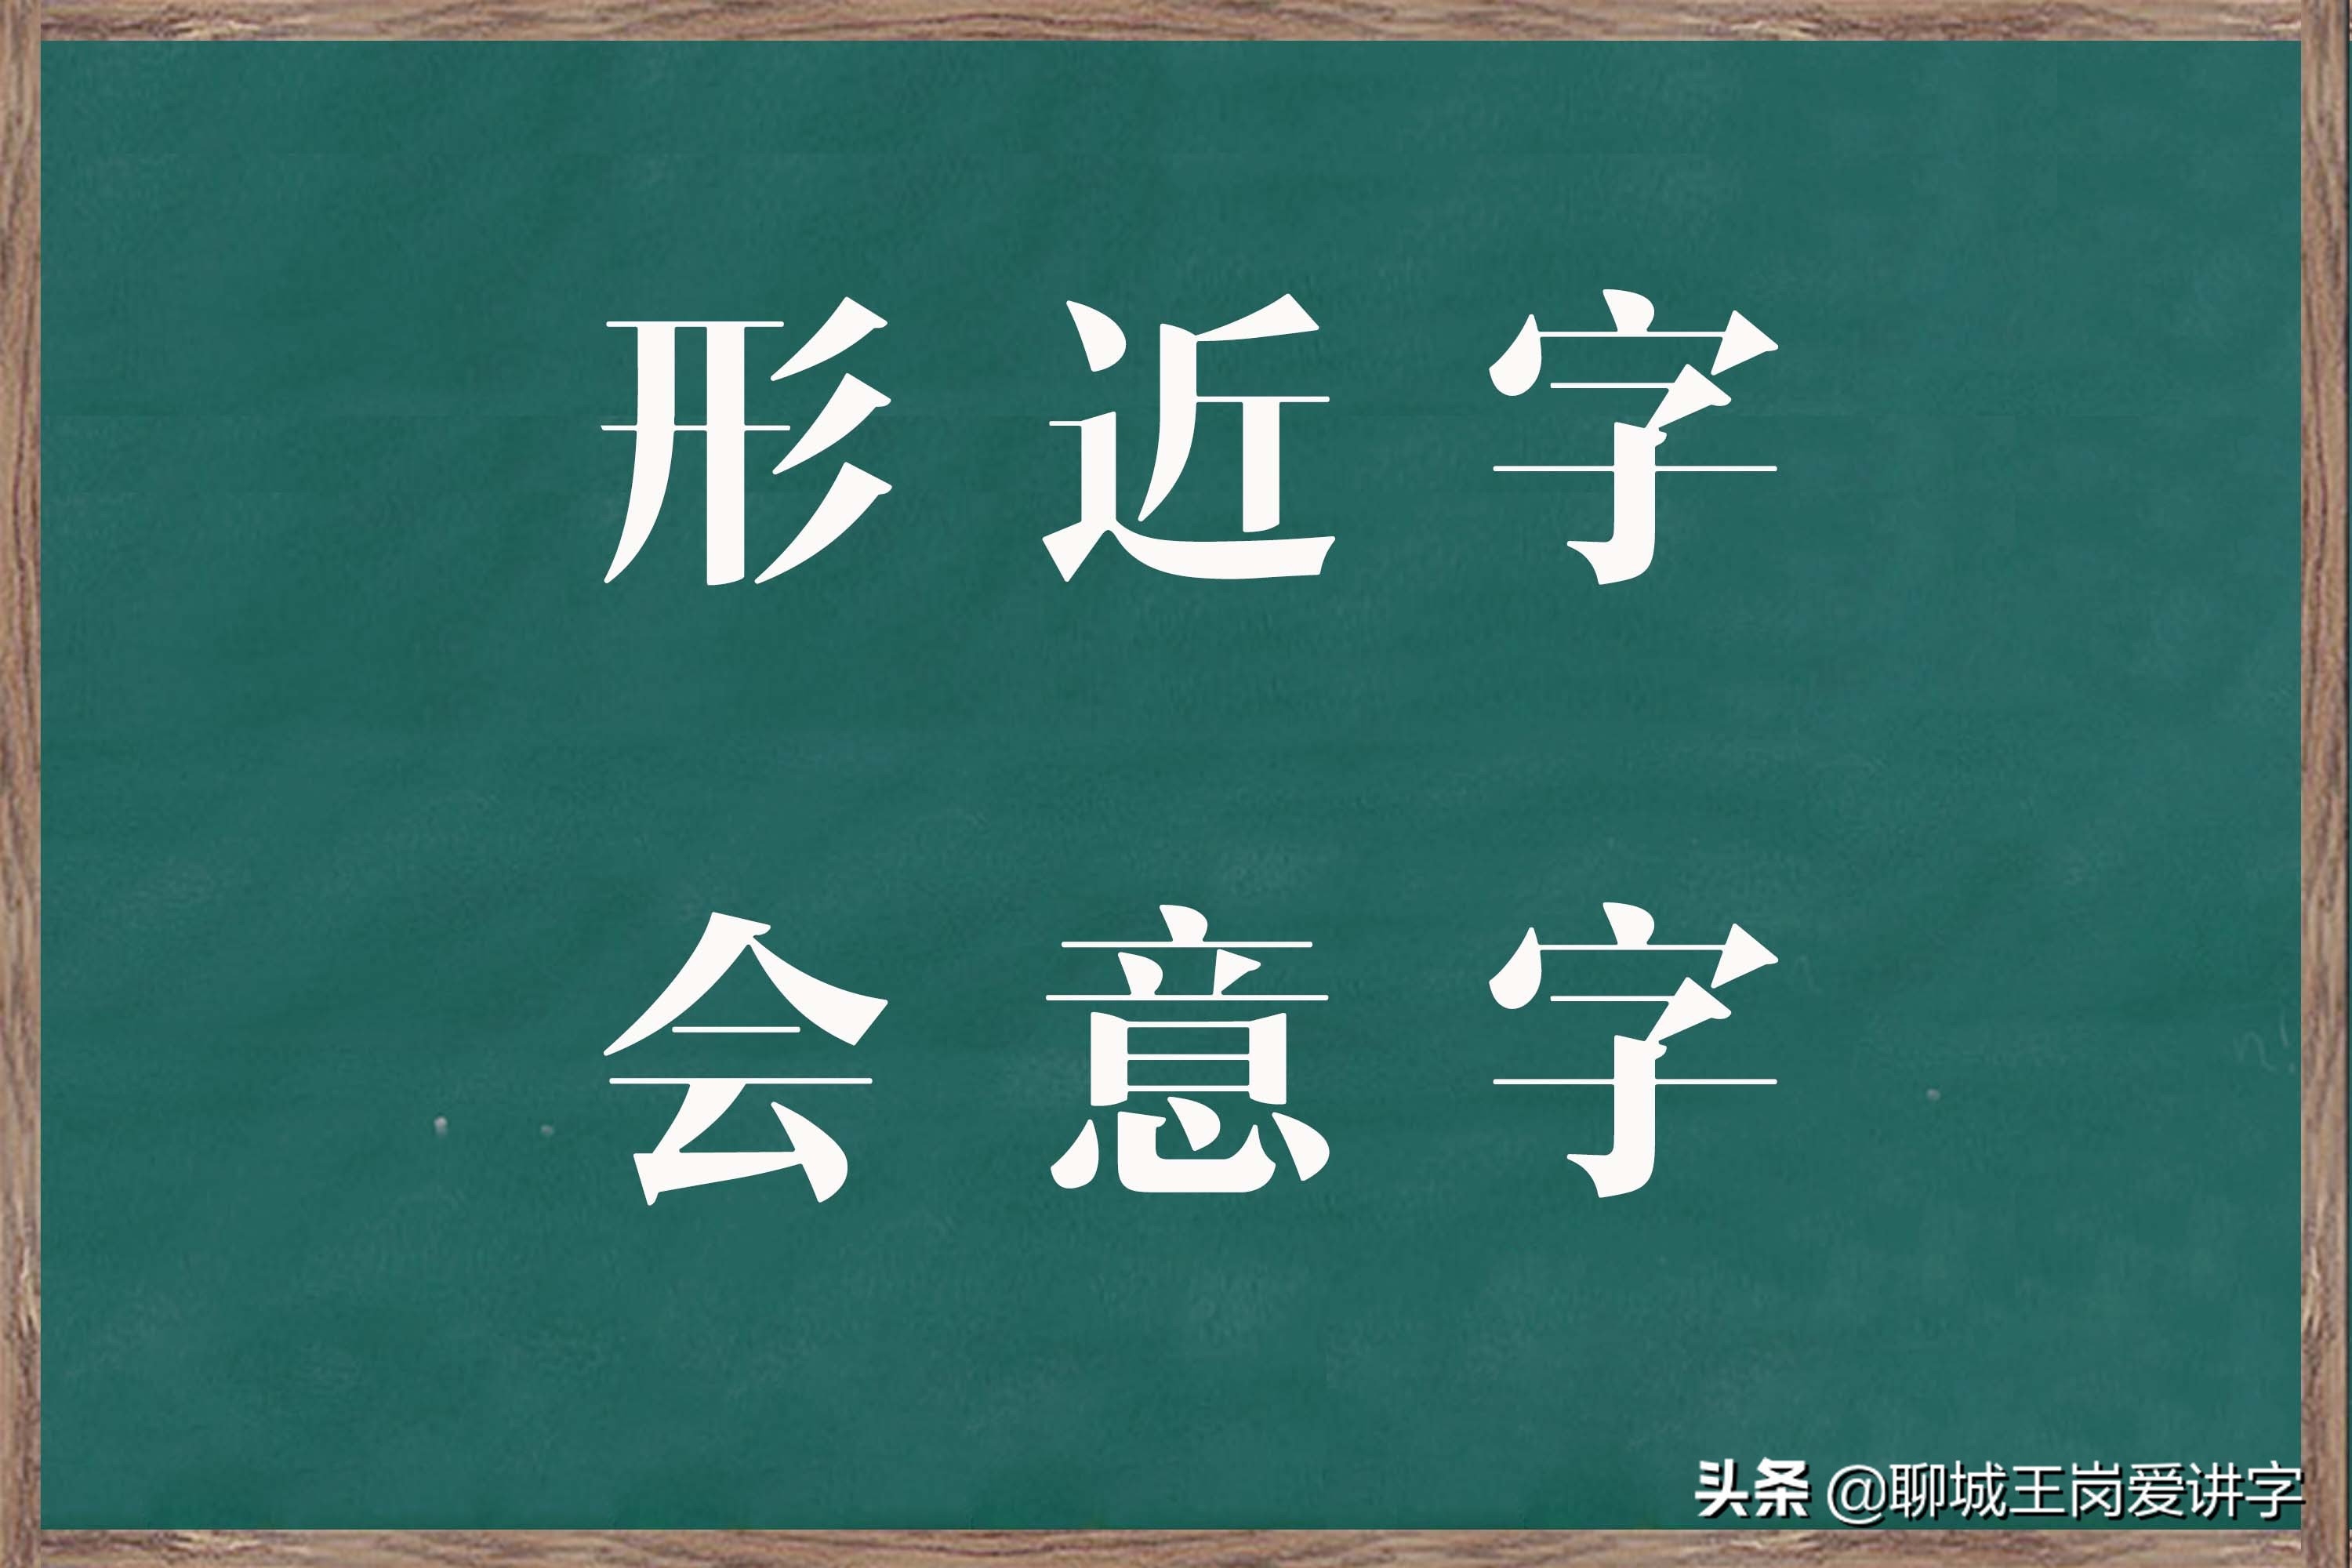 国学文化：汉字“杳”和“杲”你认识吗？学识字，涨知识